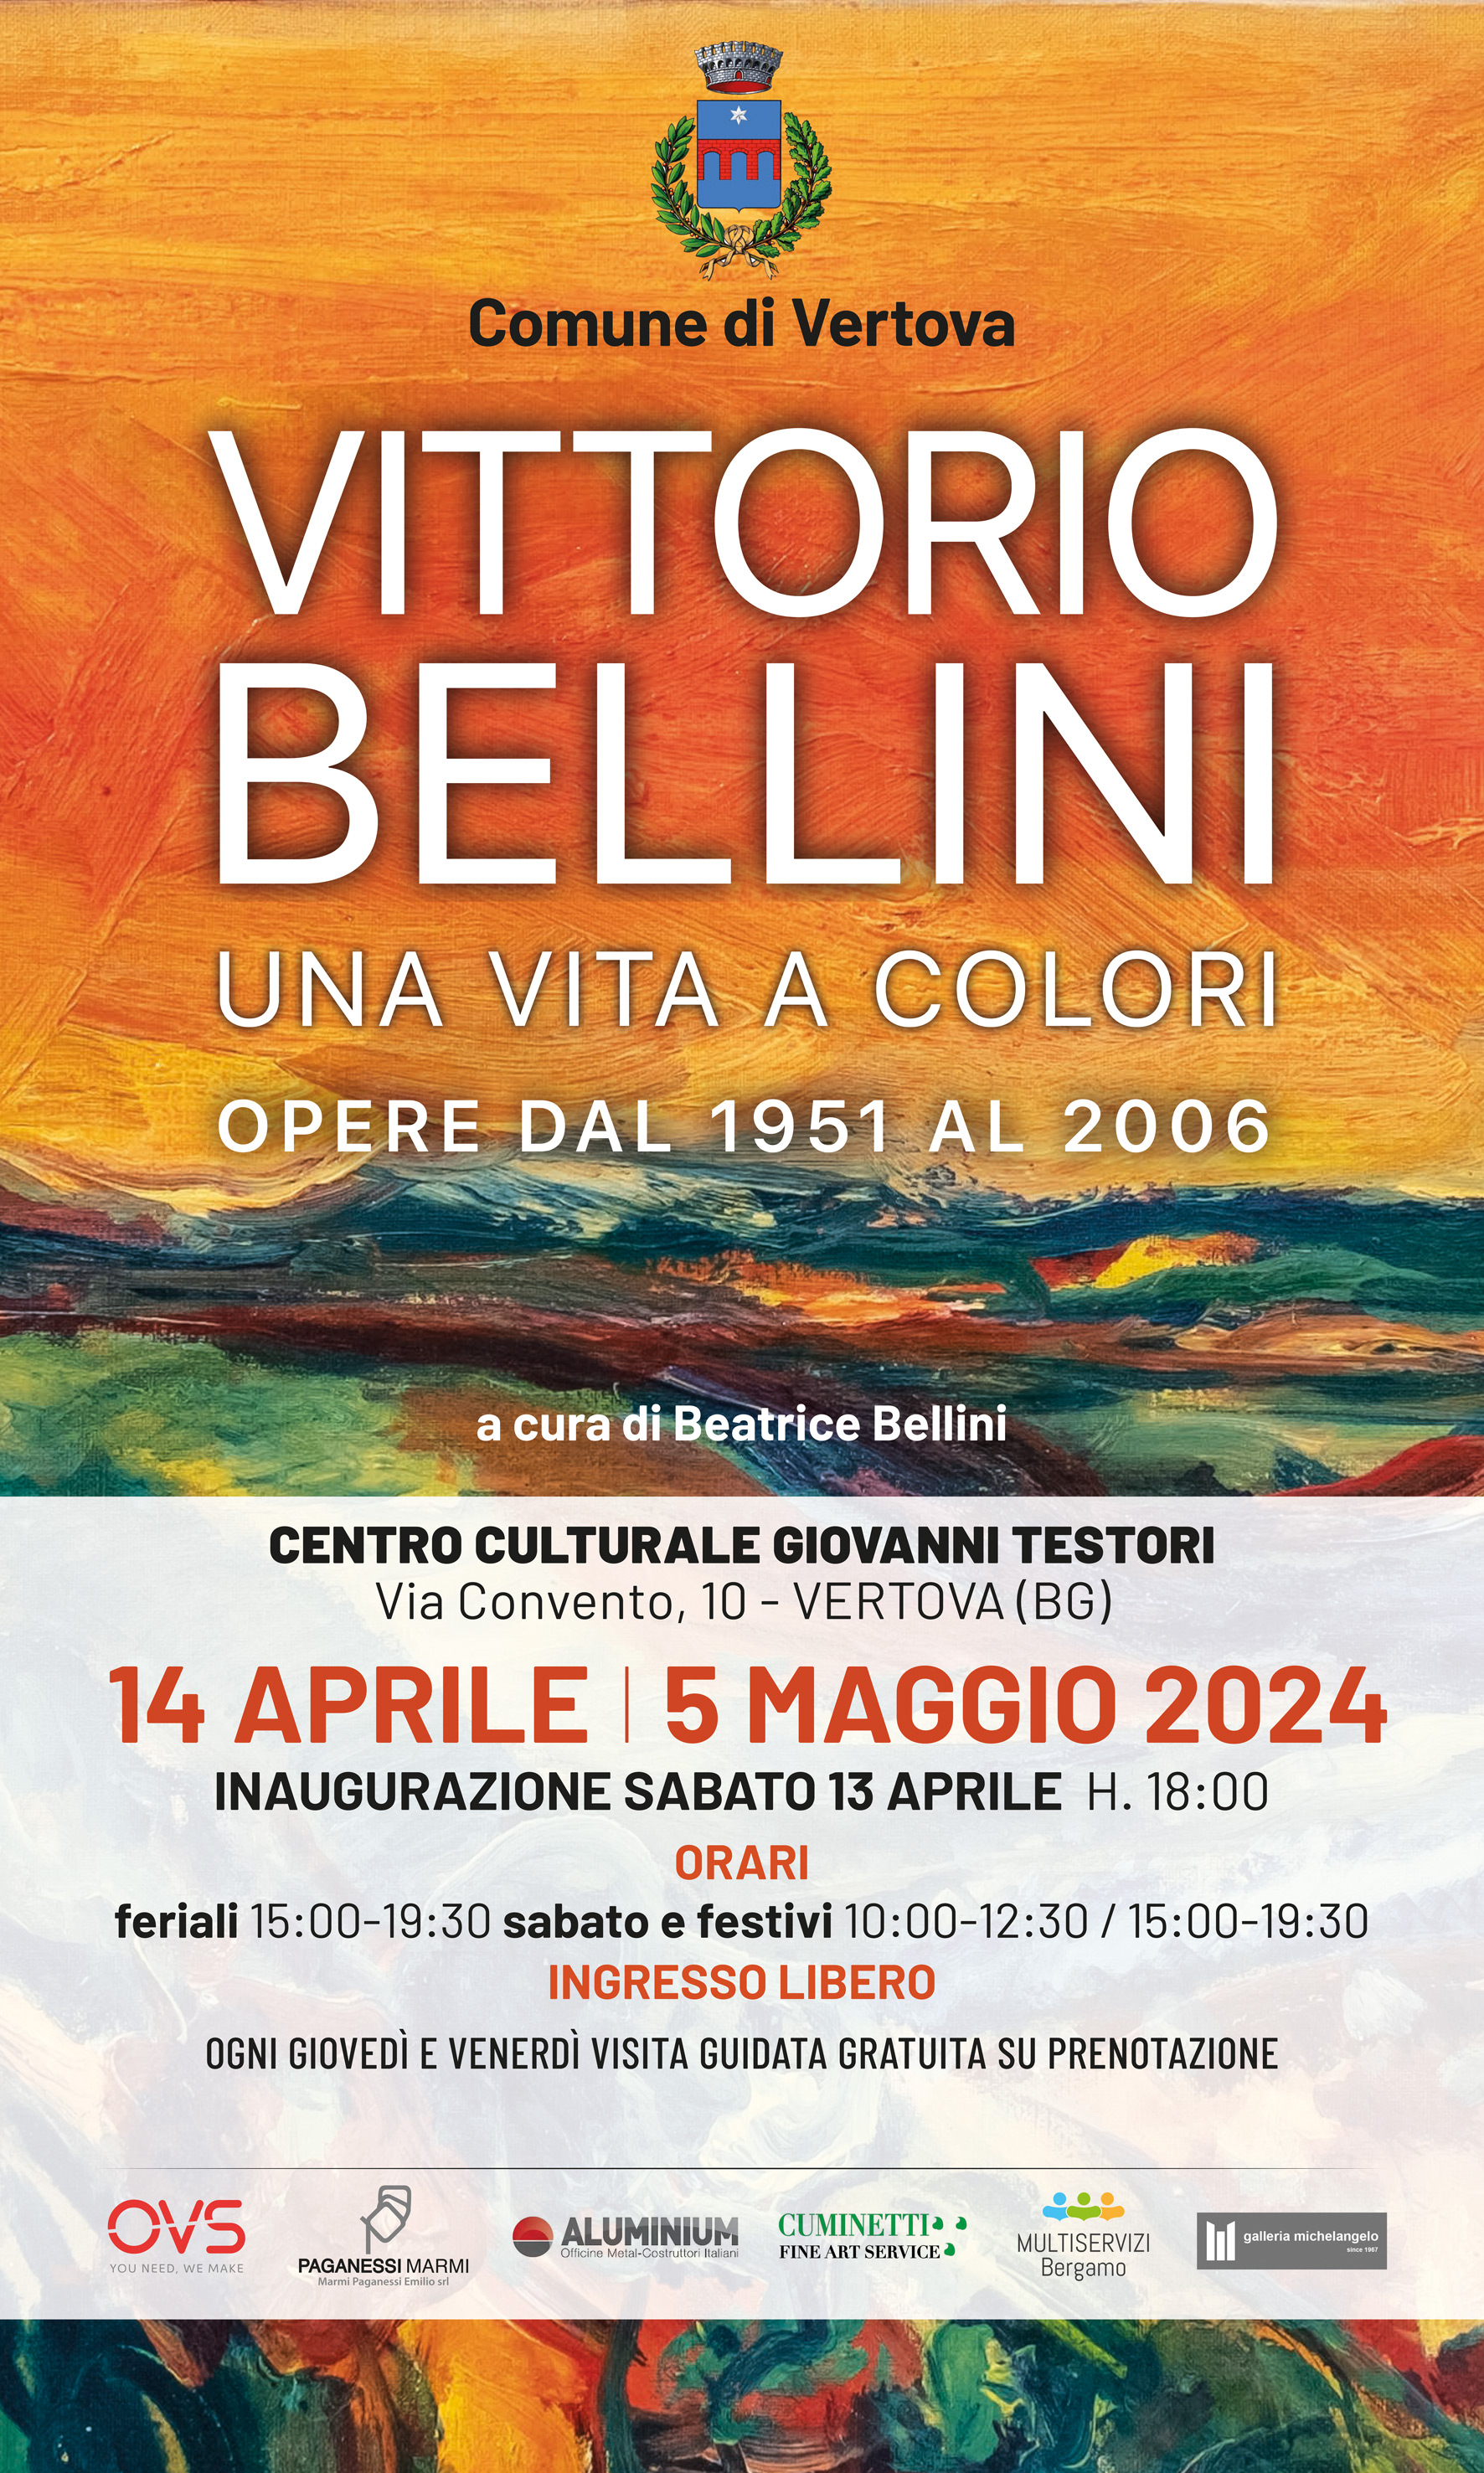 Immagine che raffigura Mostra Vittorio Bellini